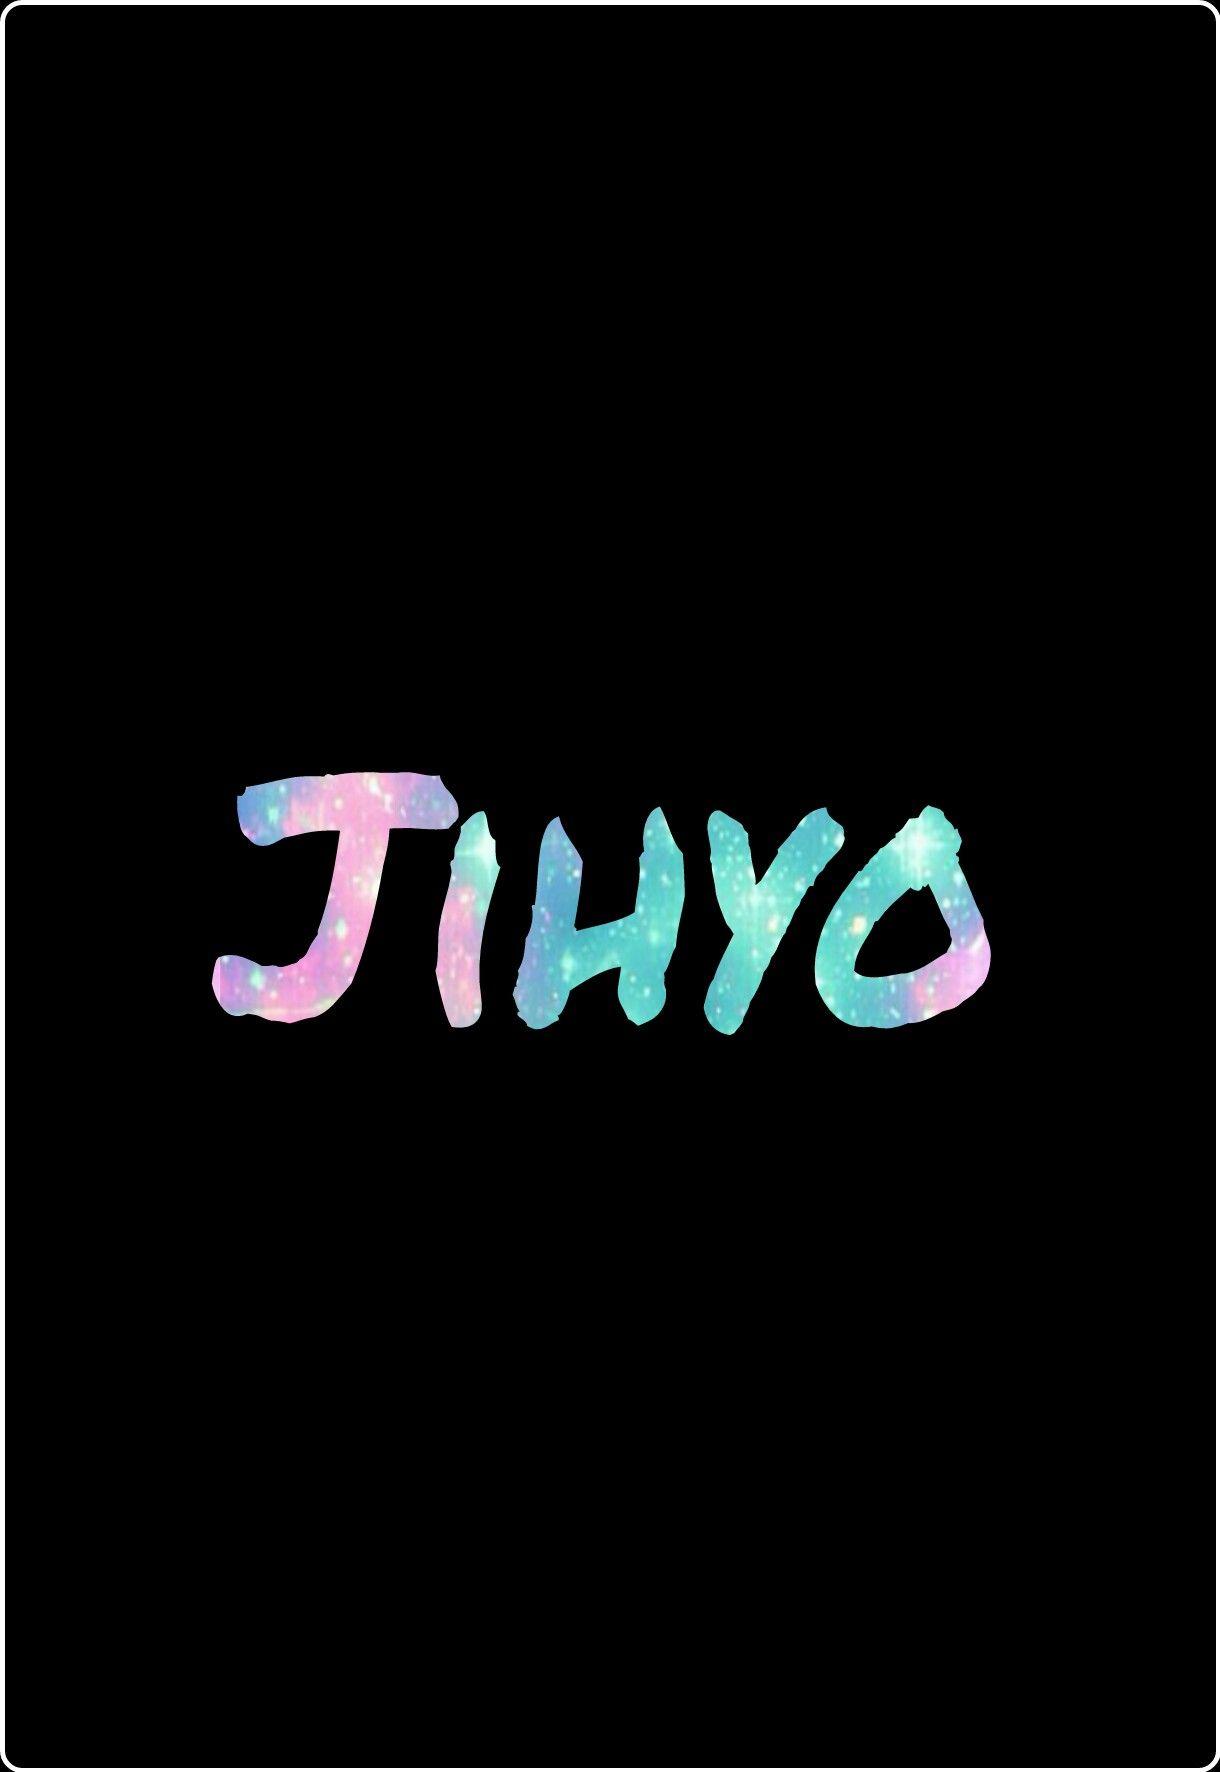 Twice Jihyo Wallpaper